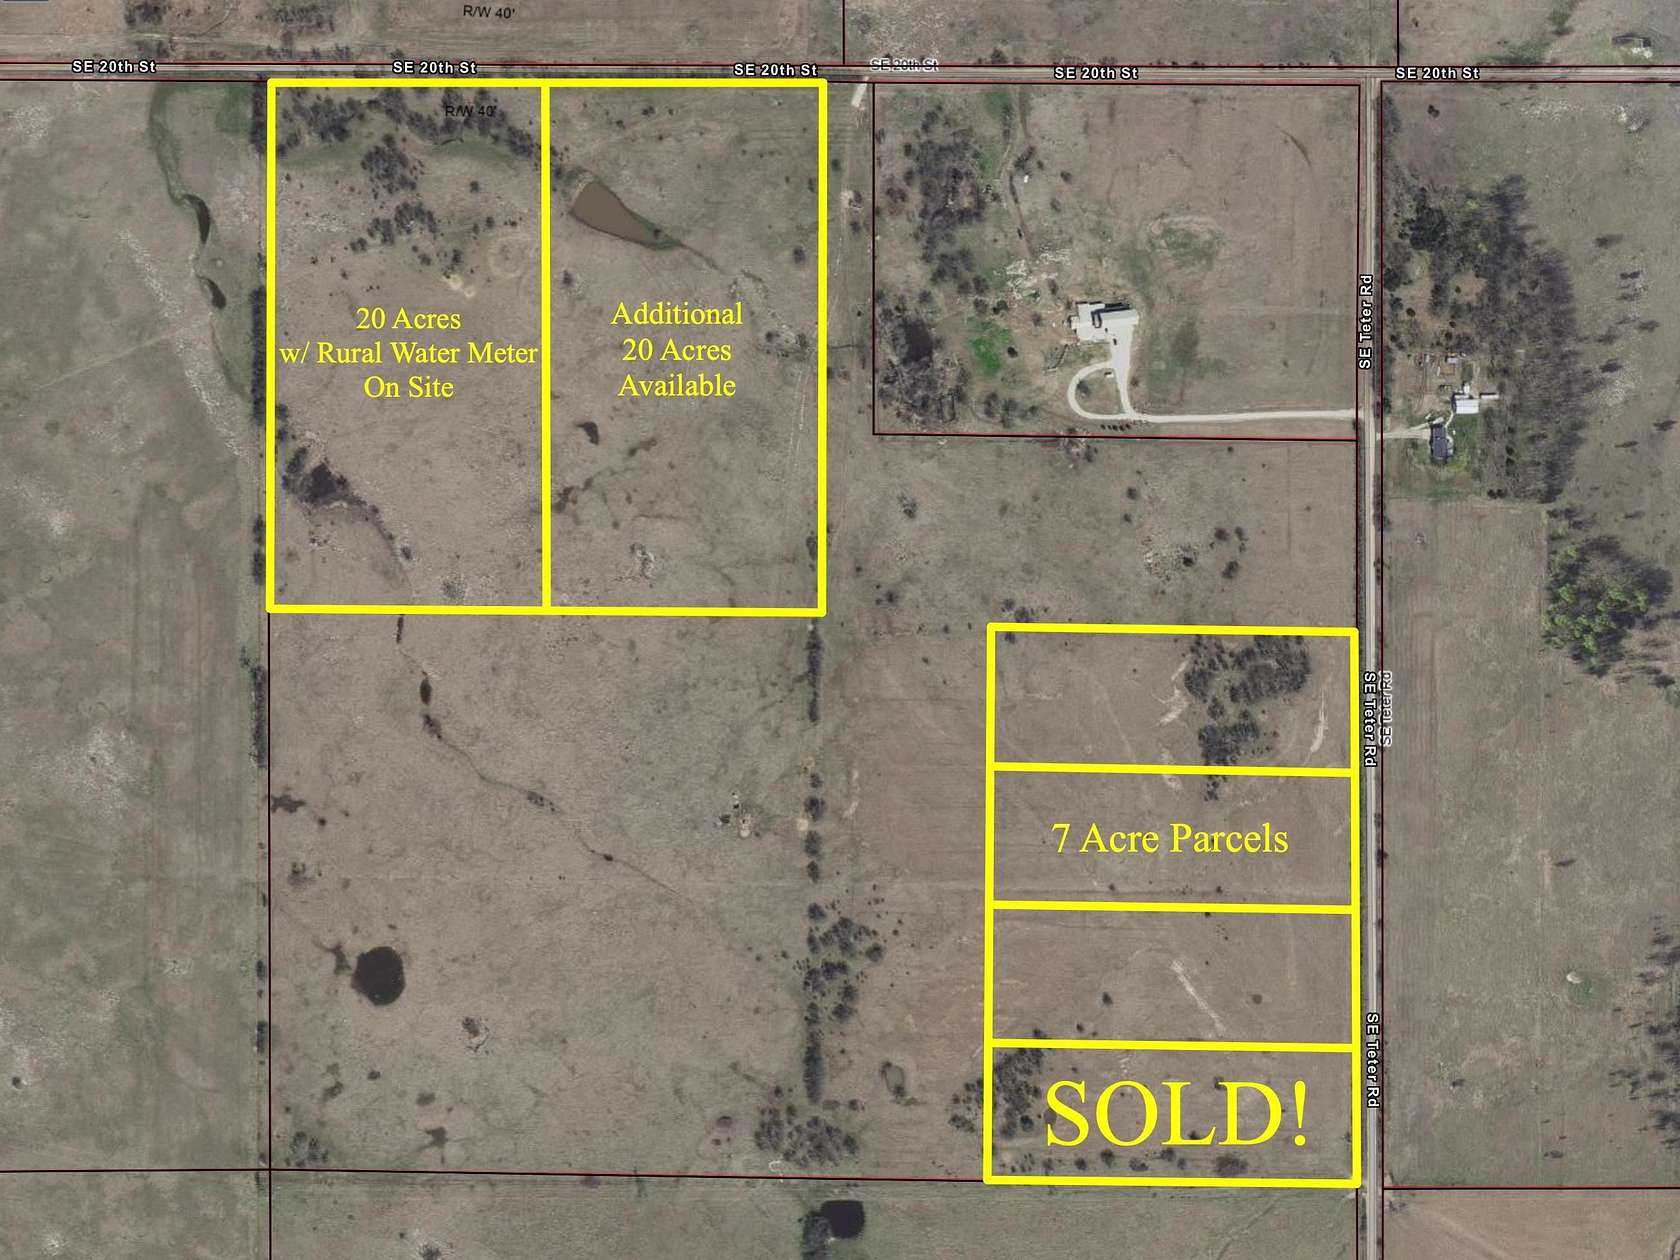 20 Acres of Land for Sale in El Dorado, Kansas